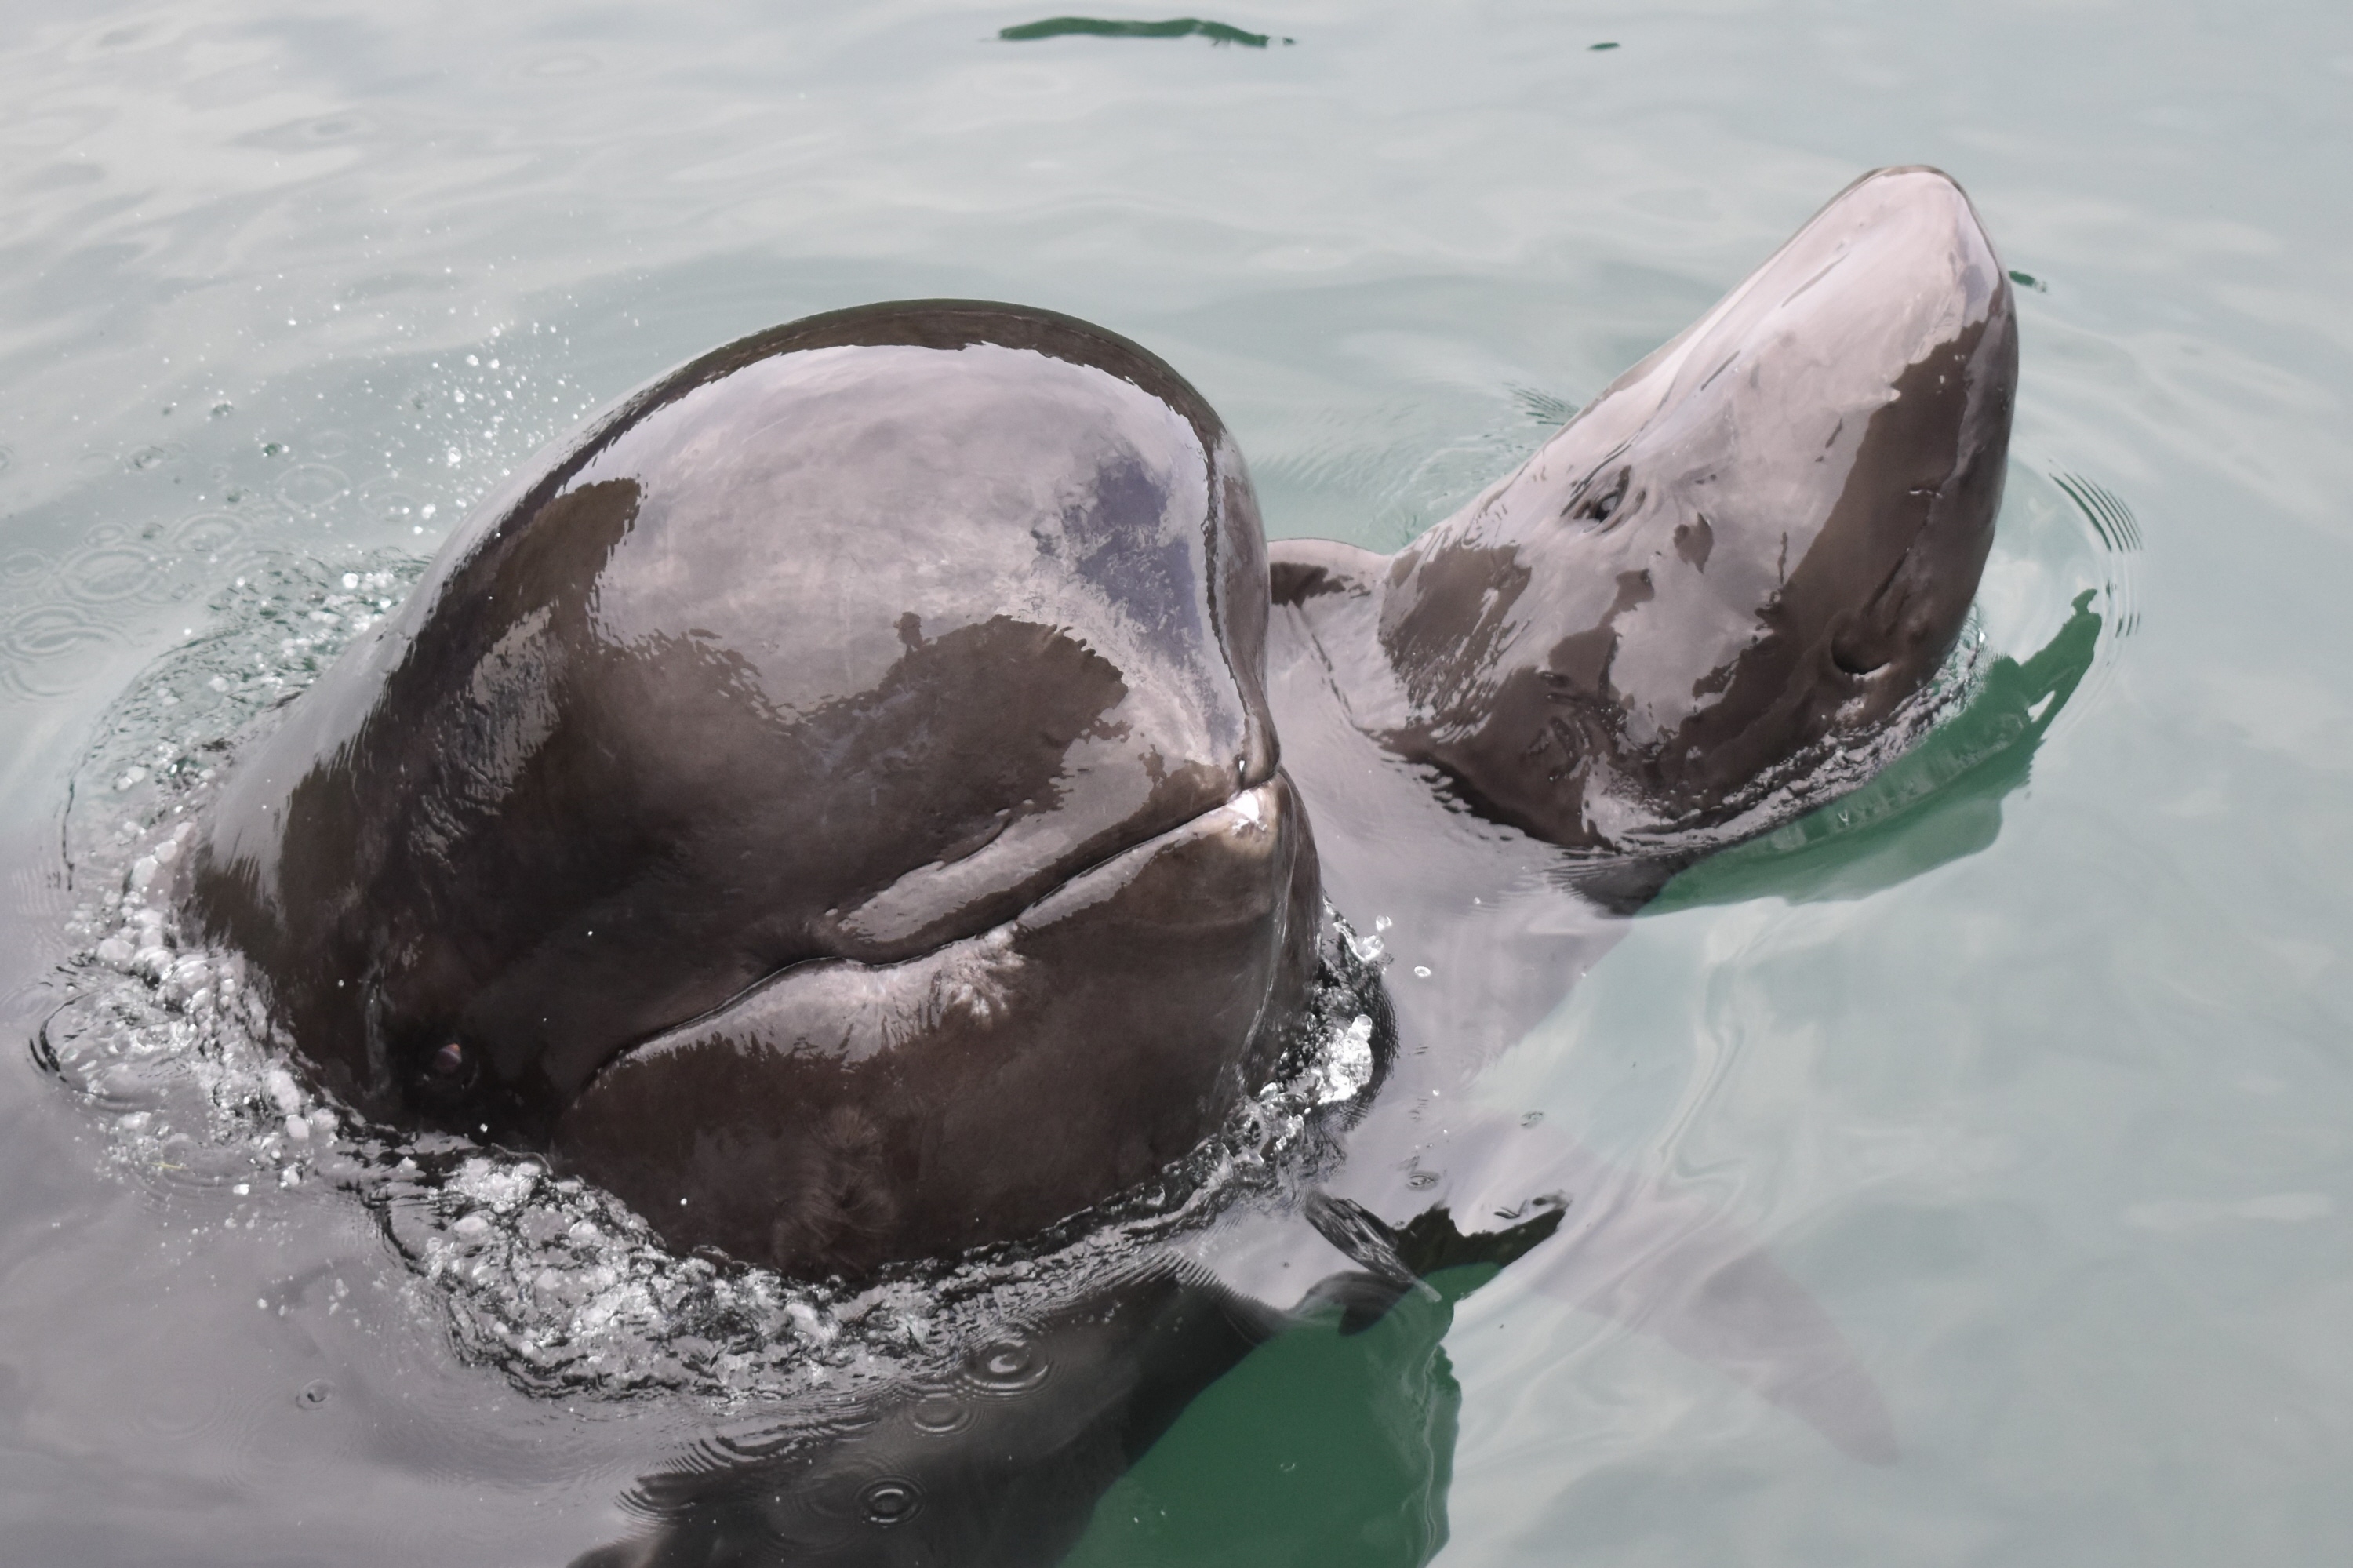 くじら日記】鯨類の繁殖④ 子クジラを人工哺育 - 産経ニュース